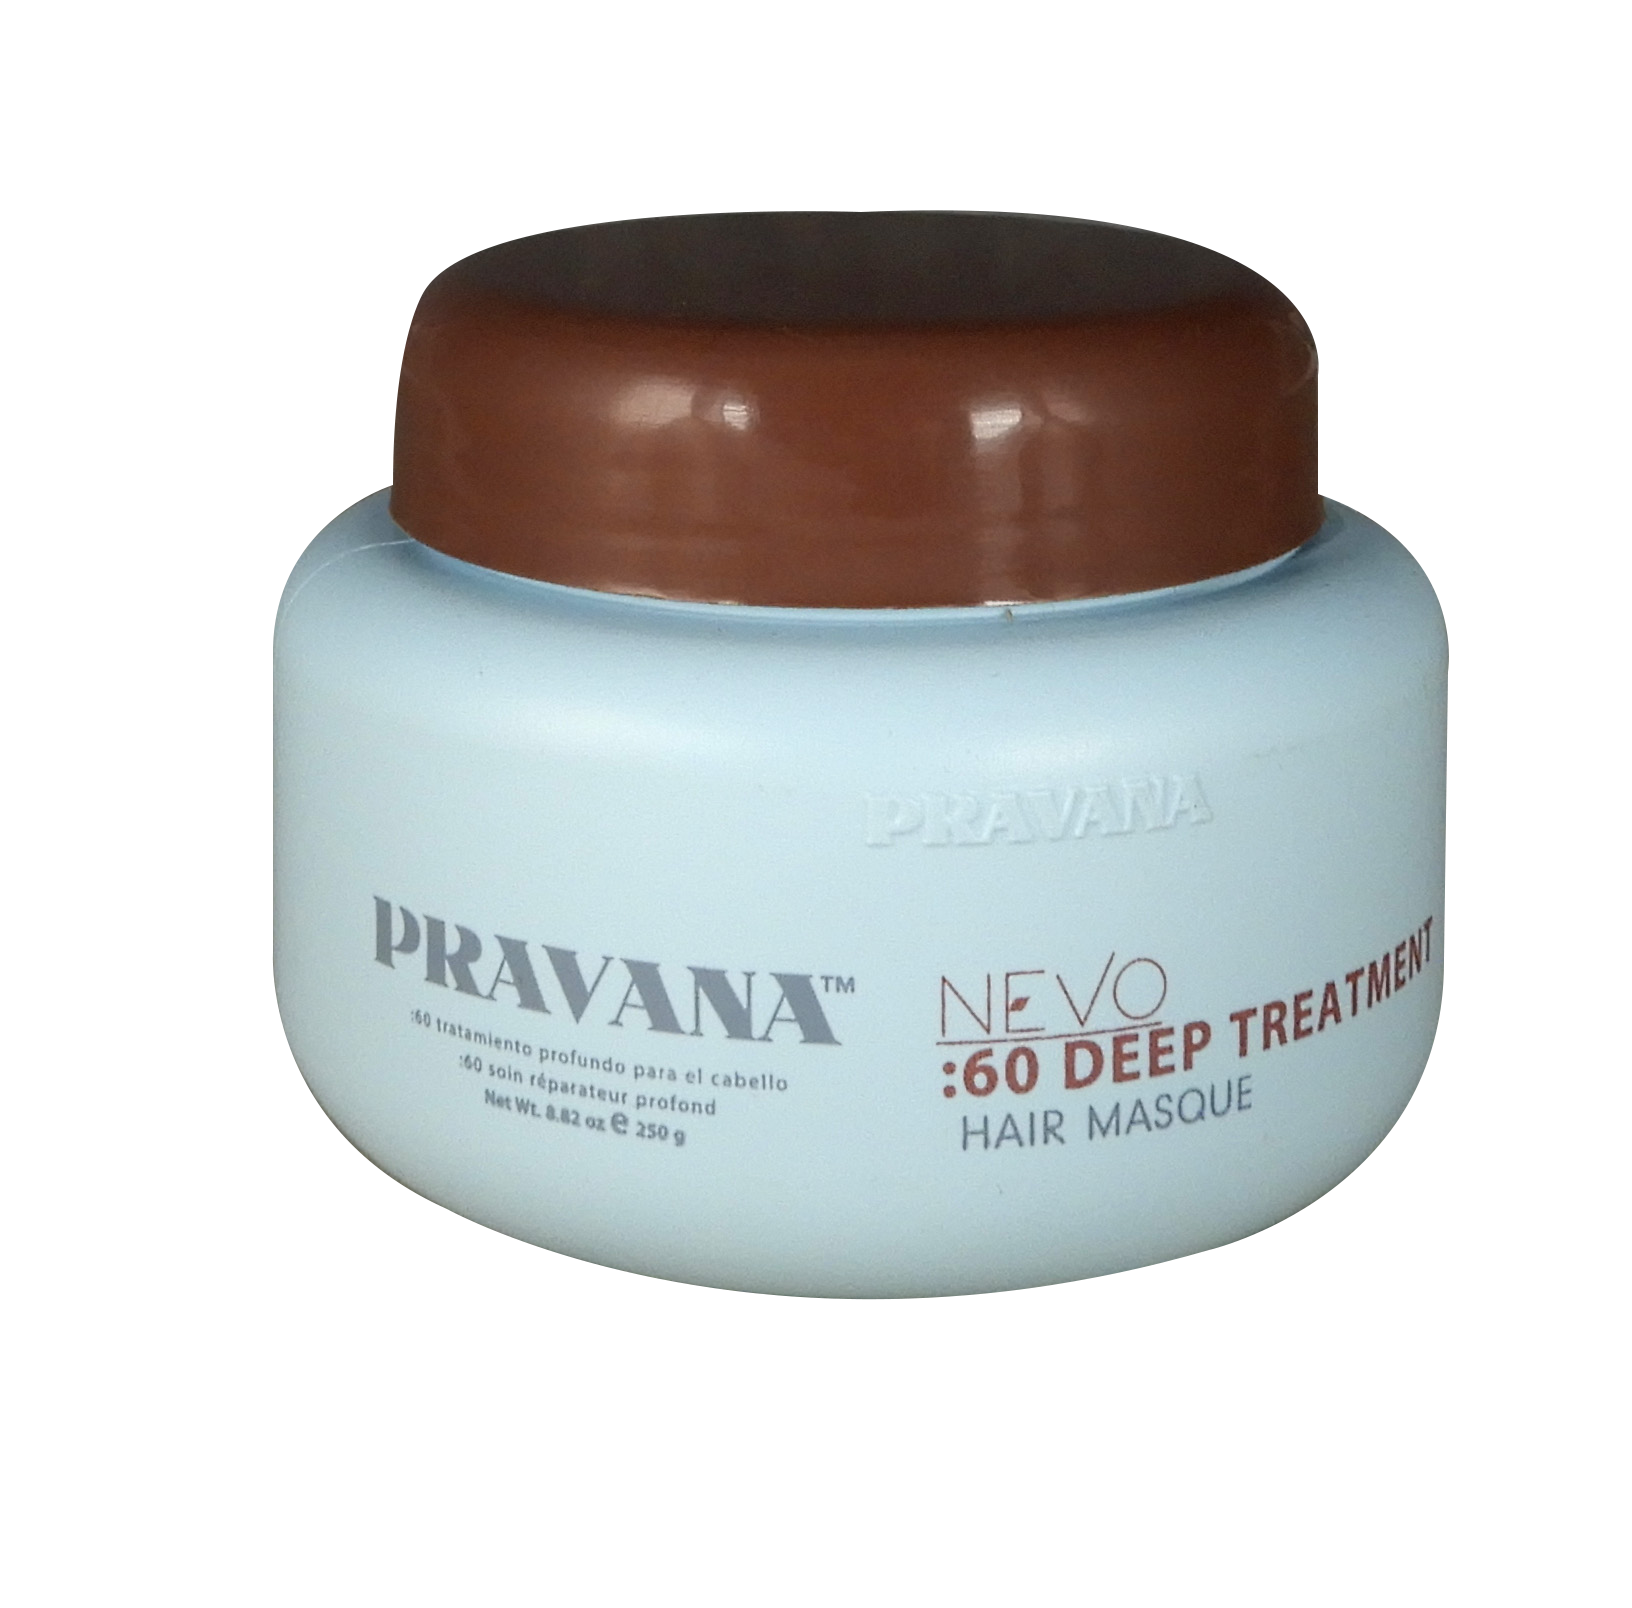 Pravana Nevo :60 Deep 250grs - Tratamiento de humectación profunda para cabello maltratado